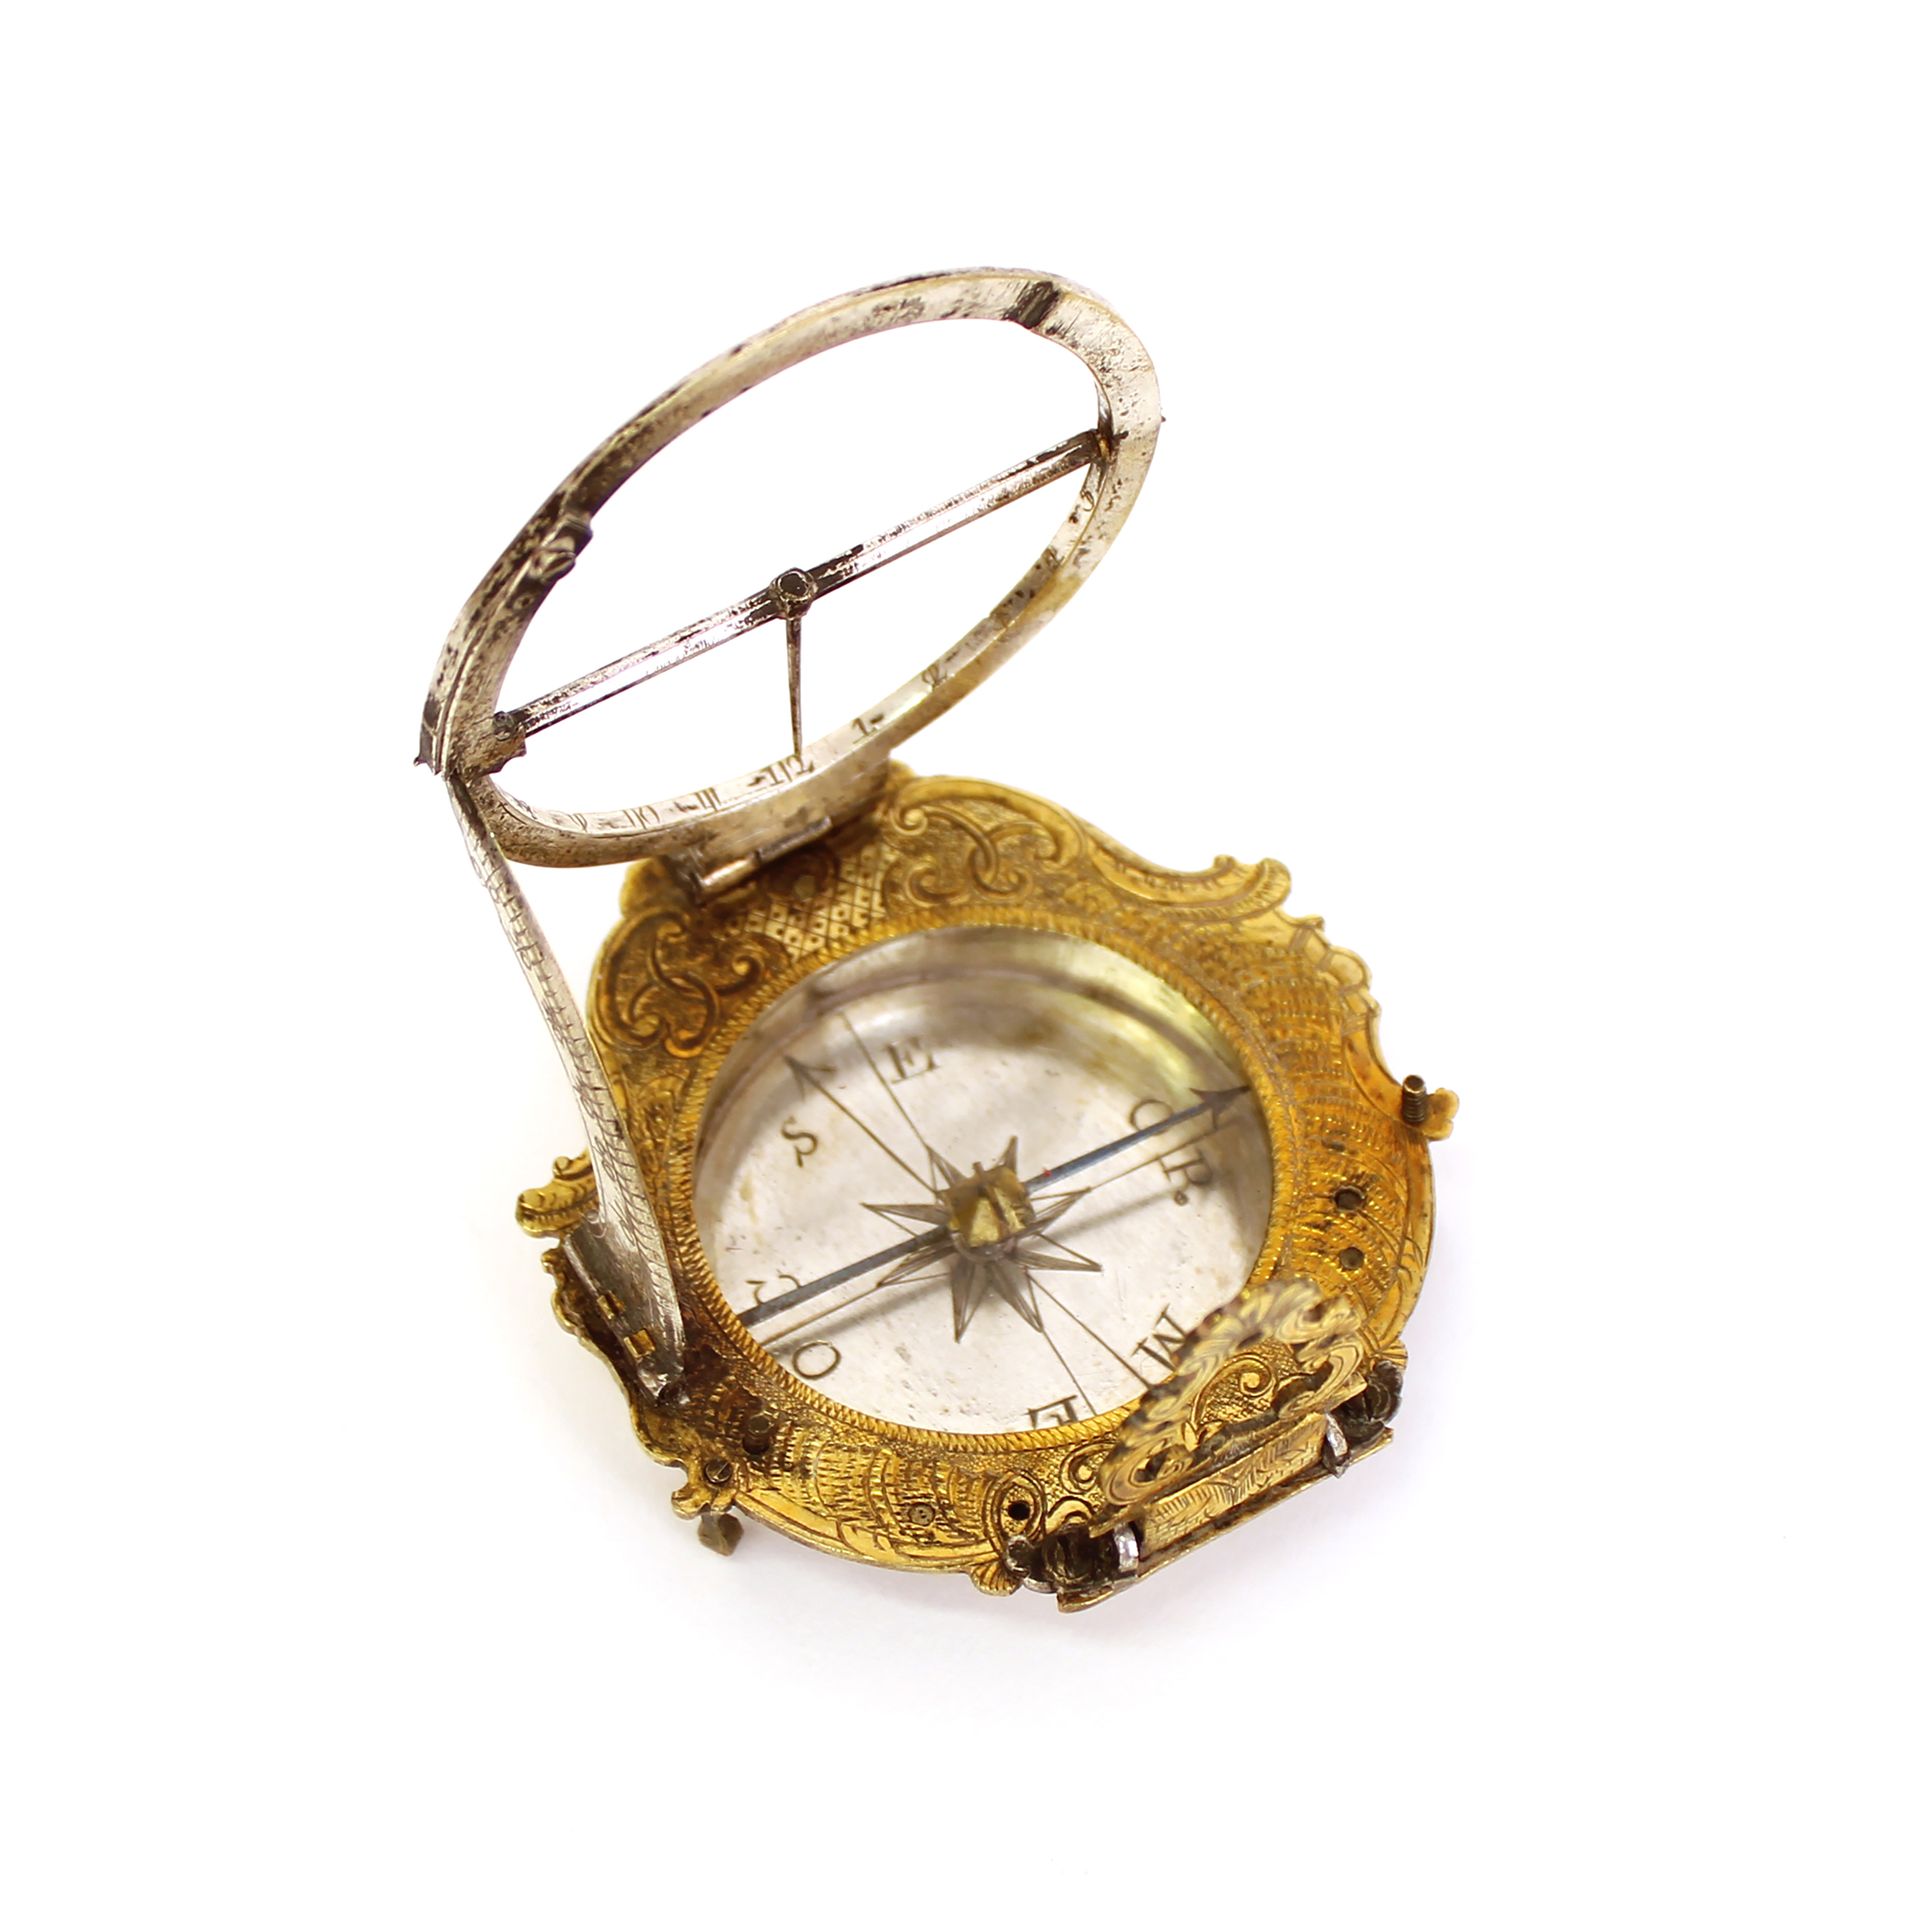 Null 日晷--青铜和铜制的八角形罗盘，有贝壳、梳齿和刺叶装饰
在其原始情况下（事故）
18世纪的作品
箱子的尺寸：长6.8 x 宽6.7 x 高2.2厘米